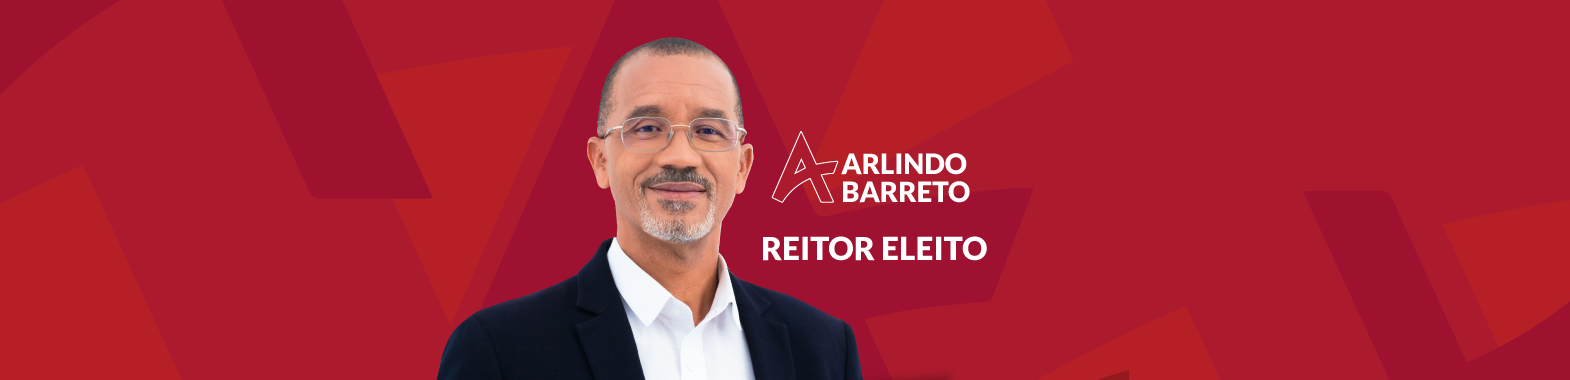 José Arlindo Barreto eleito Reitor da Universidade de Cabo Verde 